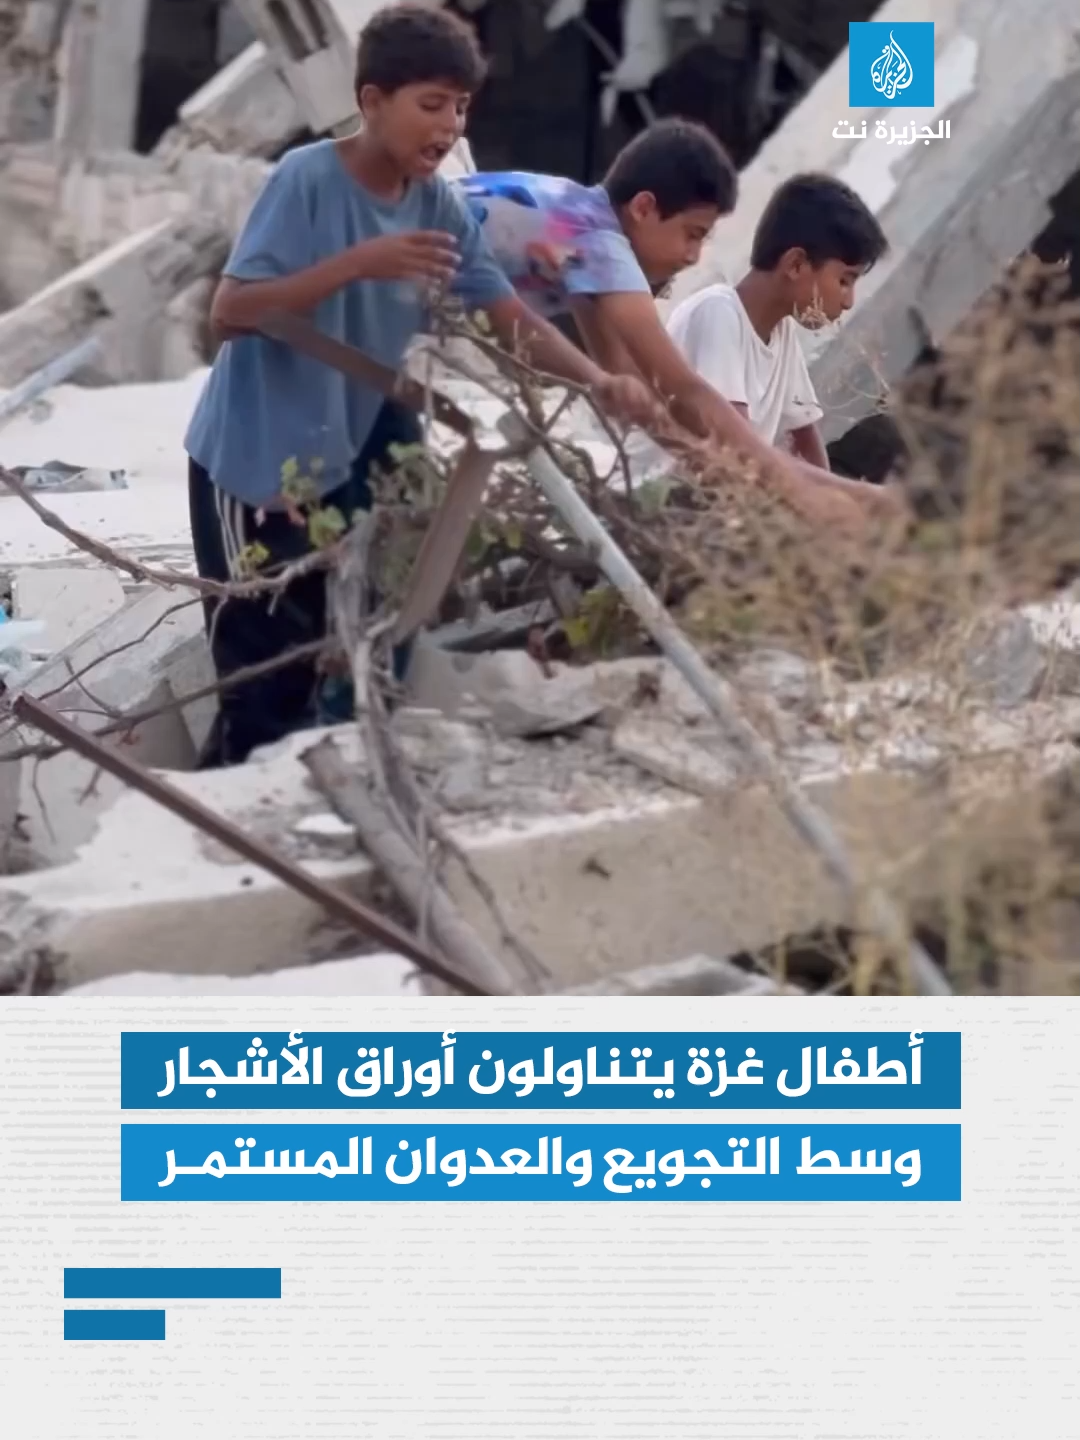 أطفال غزة يتناولون أوراق الأشجار وسط التجويع المستمر والعدوان الإسرائيلي الدائم على القطاع #أطفال #غزة #قطاع_غزة #إسرائيل #الاحتلال #قصف #الأشجار #الغذاء #الطعام #الجزيرة